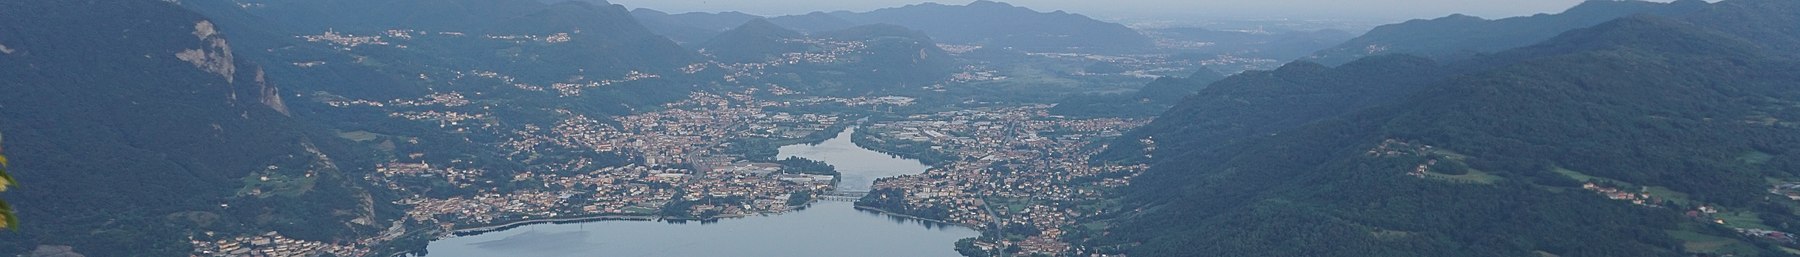 Vista sul Calolziocorte e Lago di Garlate pagebanner.jpg